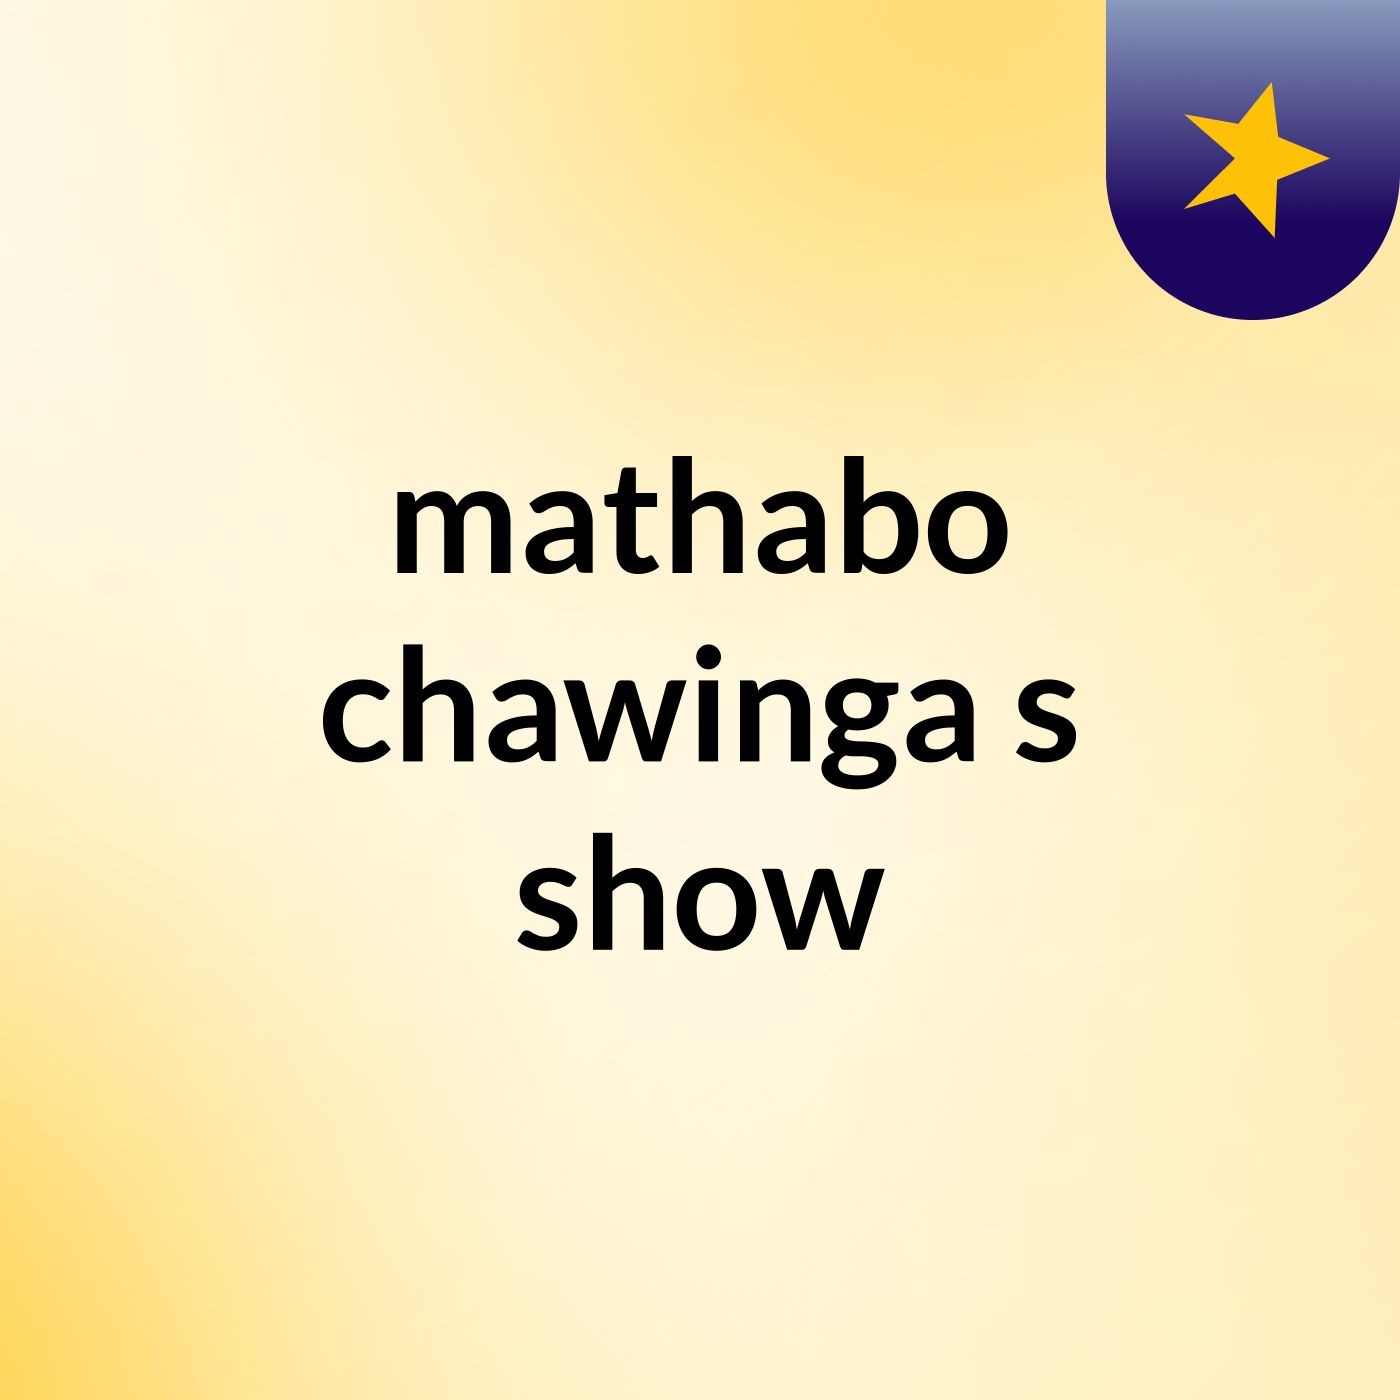 mathabo chawinga's show